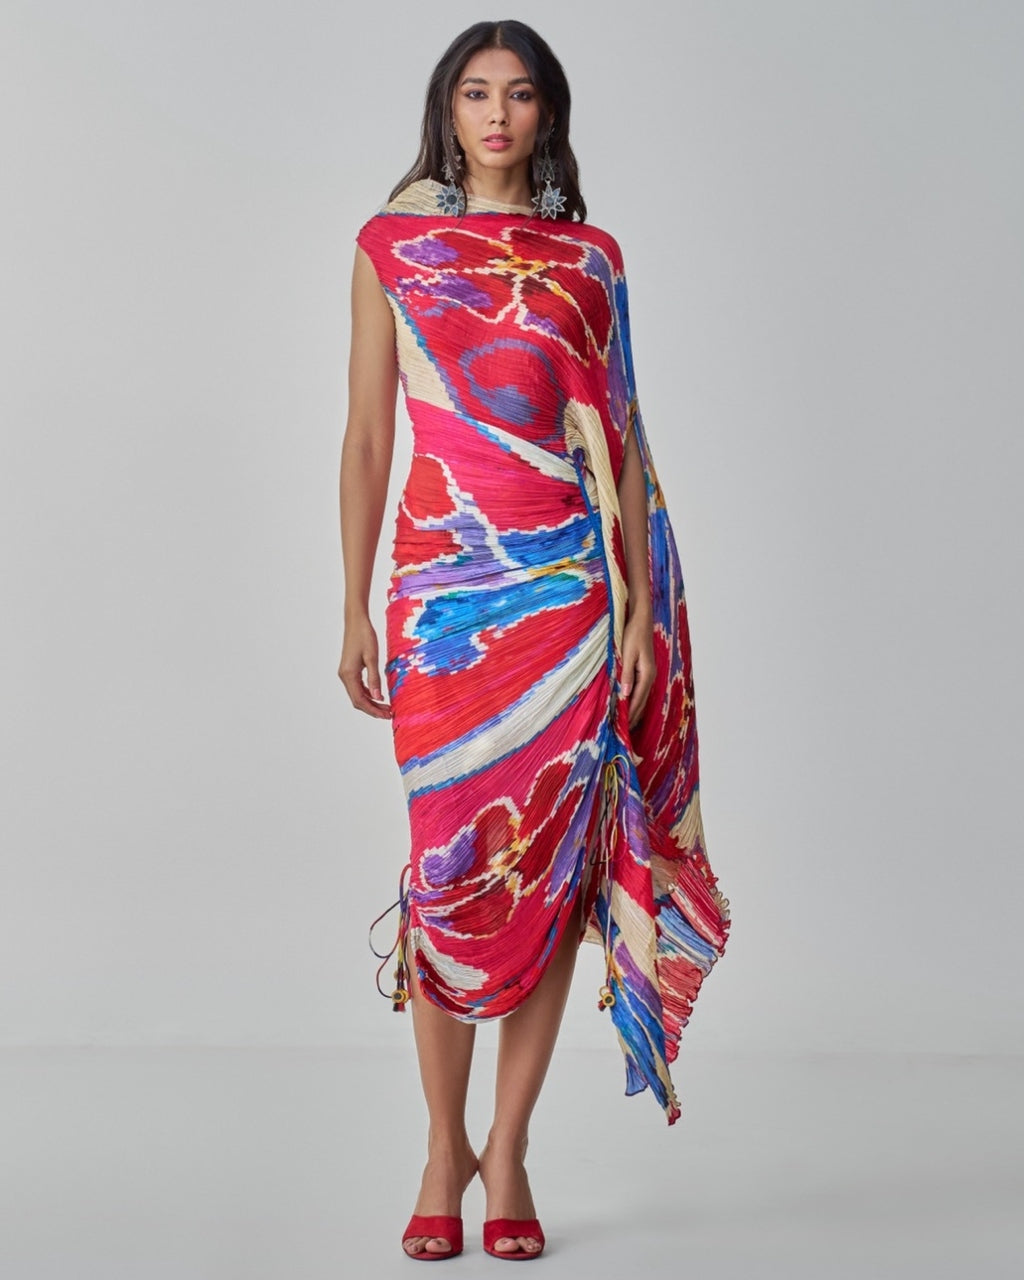 Sumatra Sari Dress